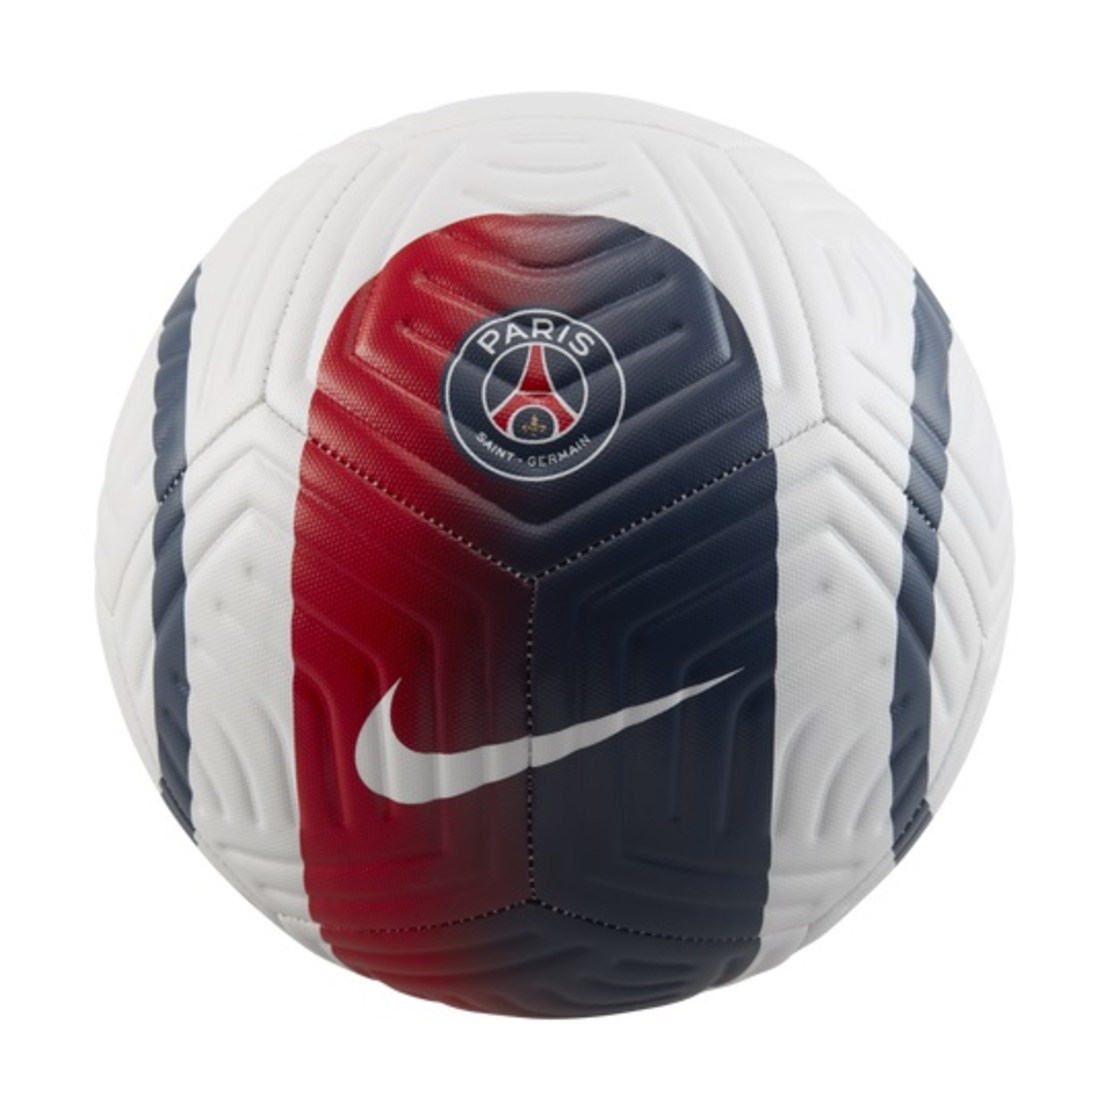 כדורגל נייק סנט גרמאן | Paris Saint-Germain Academy Football